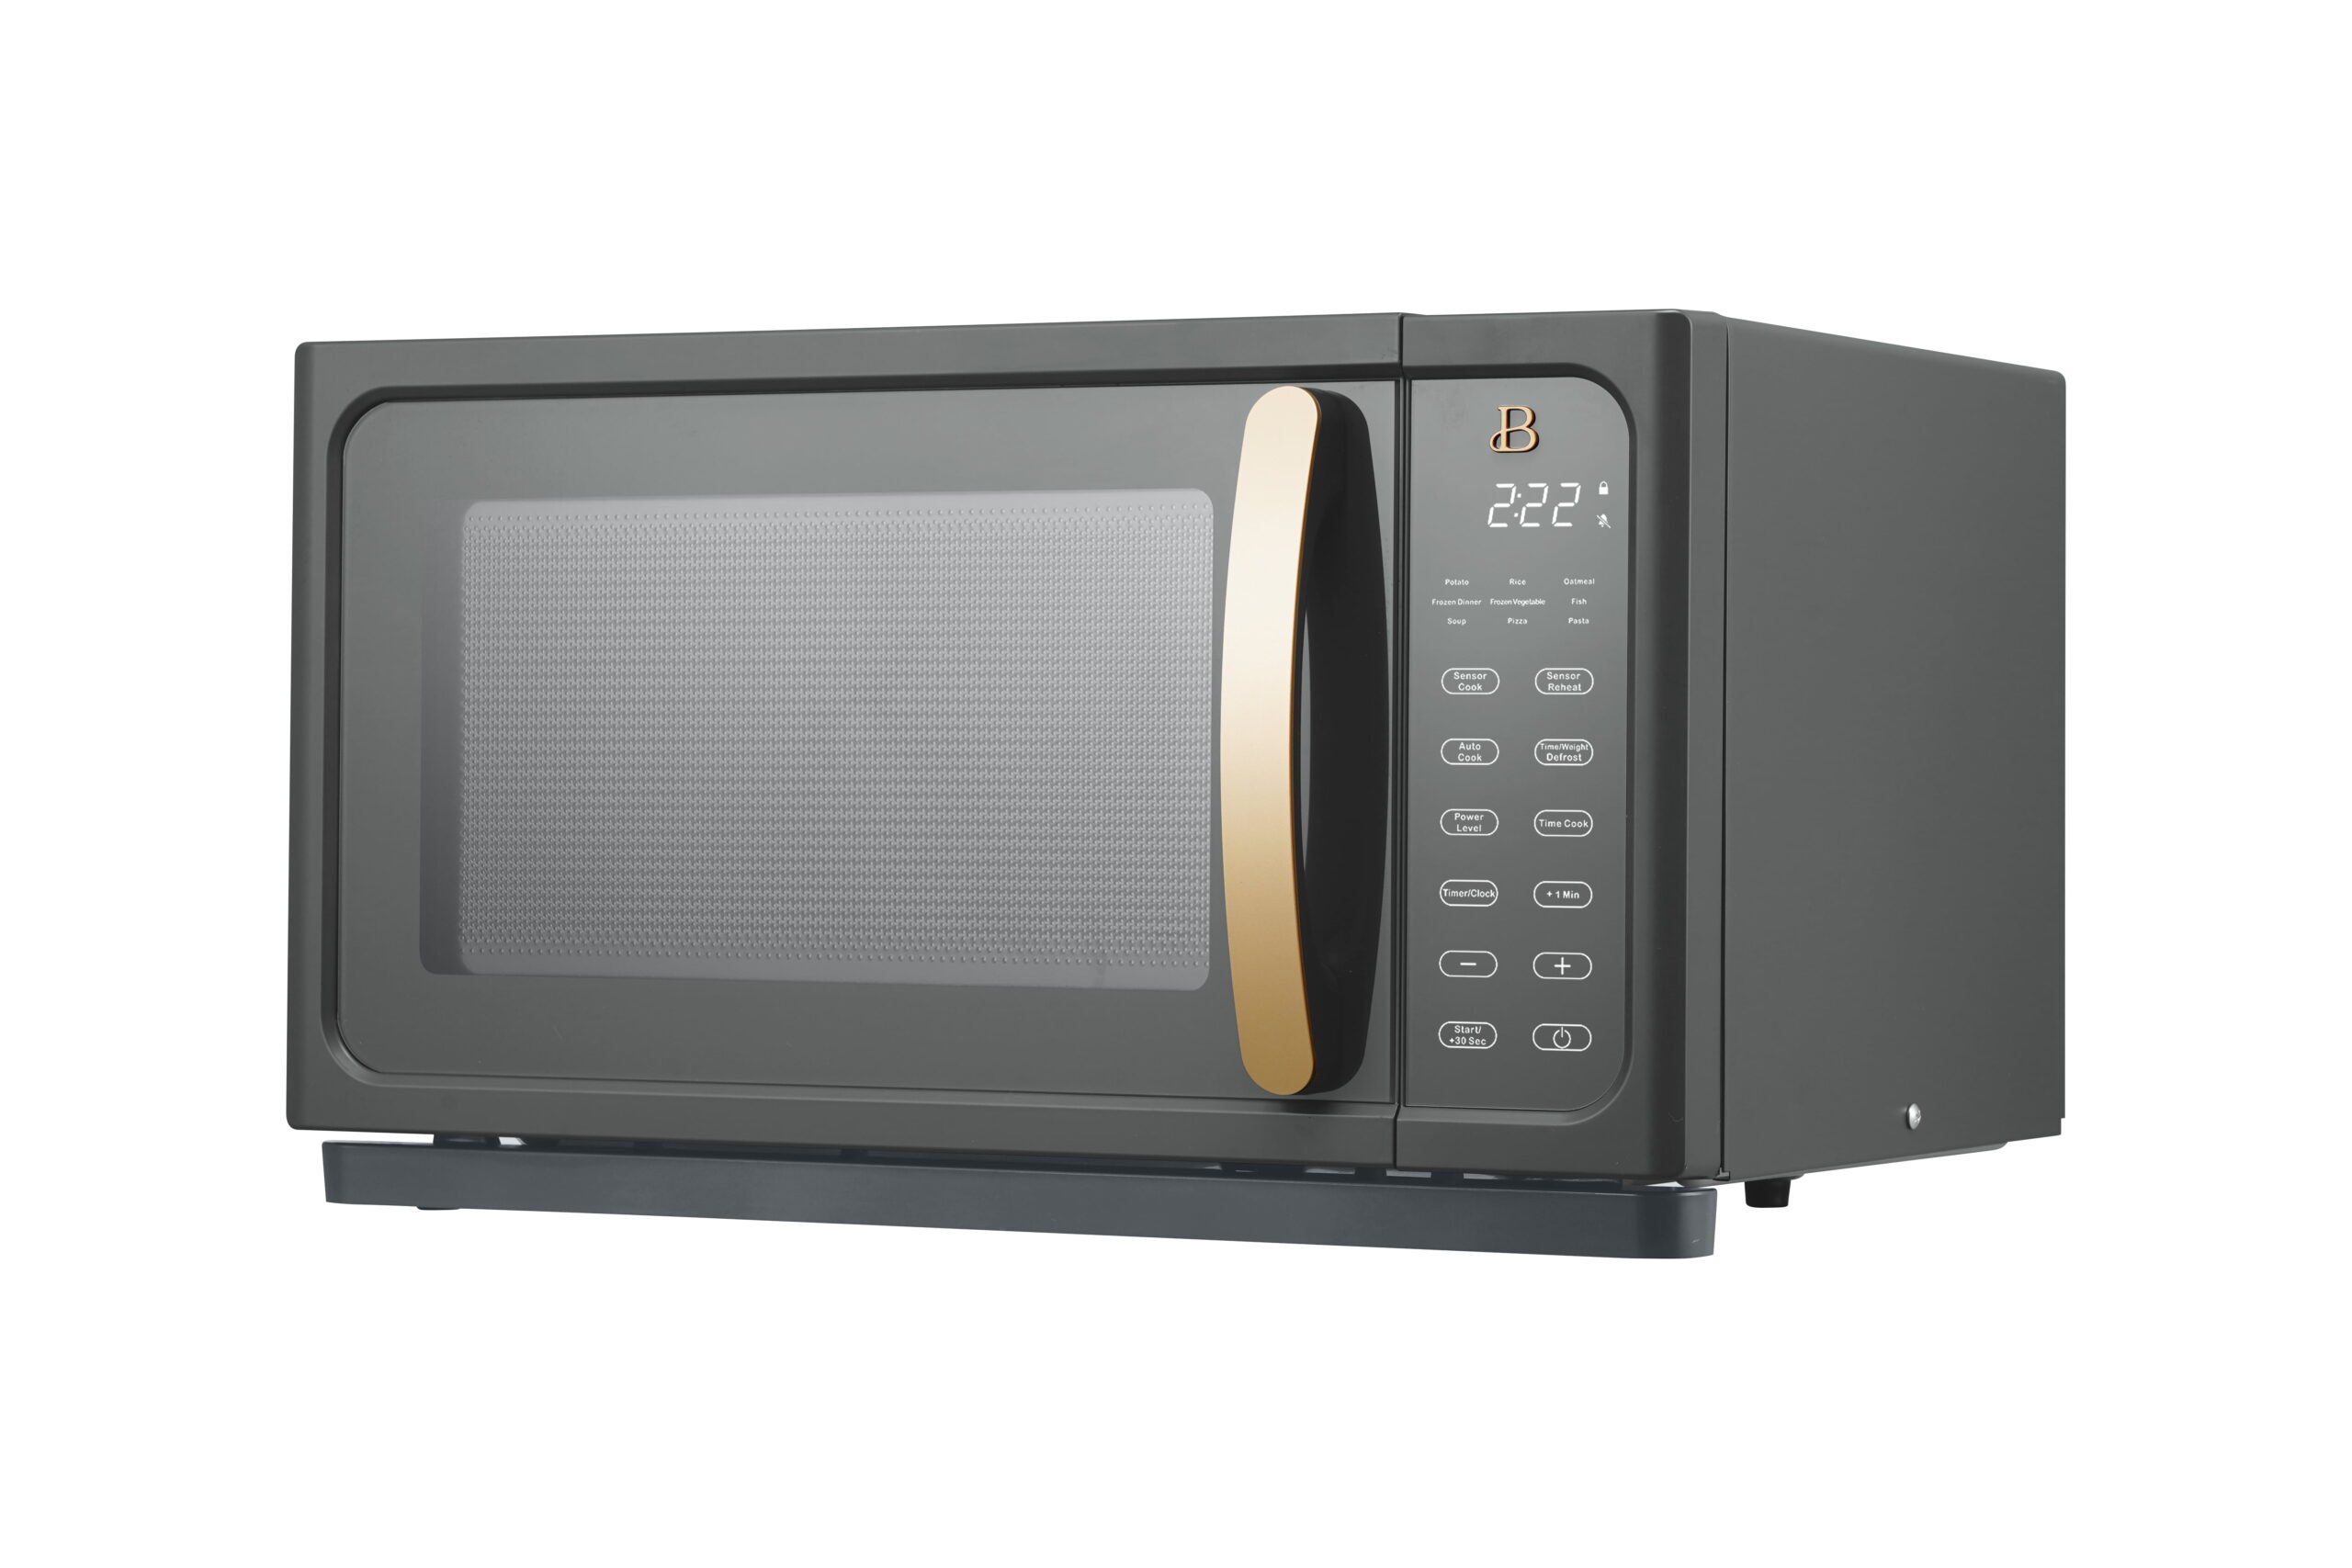 Beautiful 1.1 Cu ft 1000 Watt, Sensor Microwave Oven Oyster Grey by Drew  Barrymore